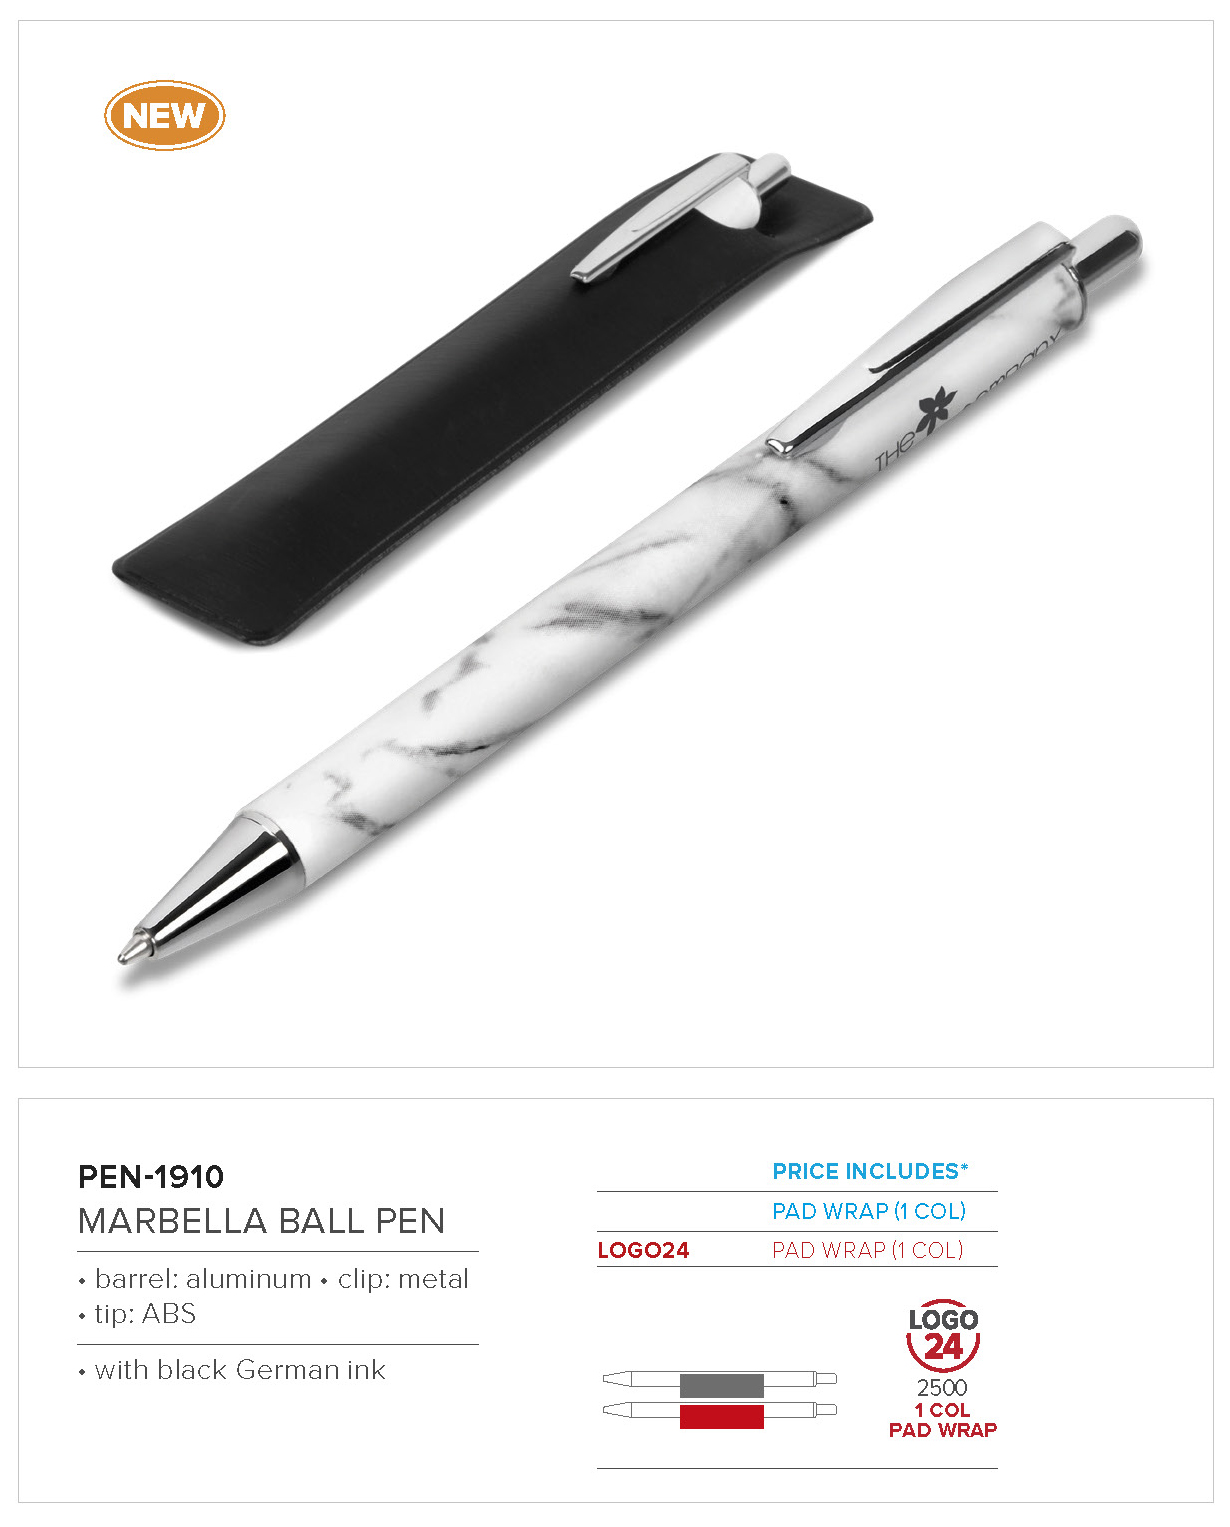 PEN-1910 - Marbella Ball Pen - Catalogue Image